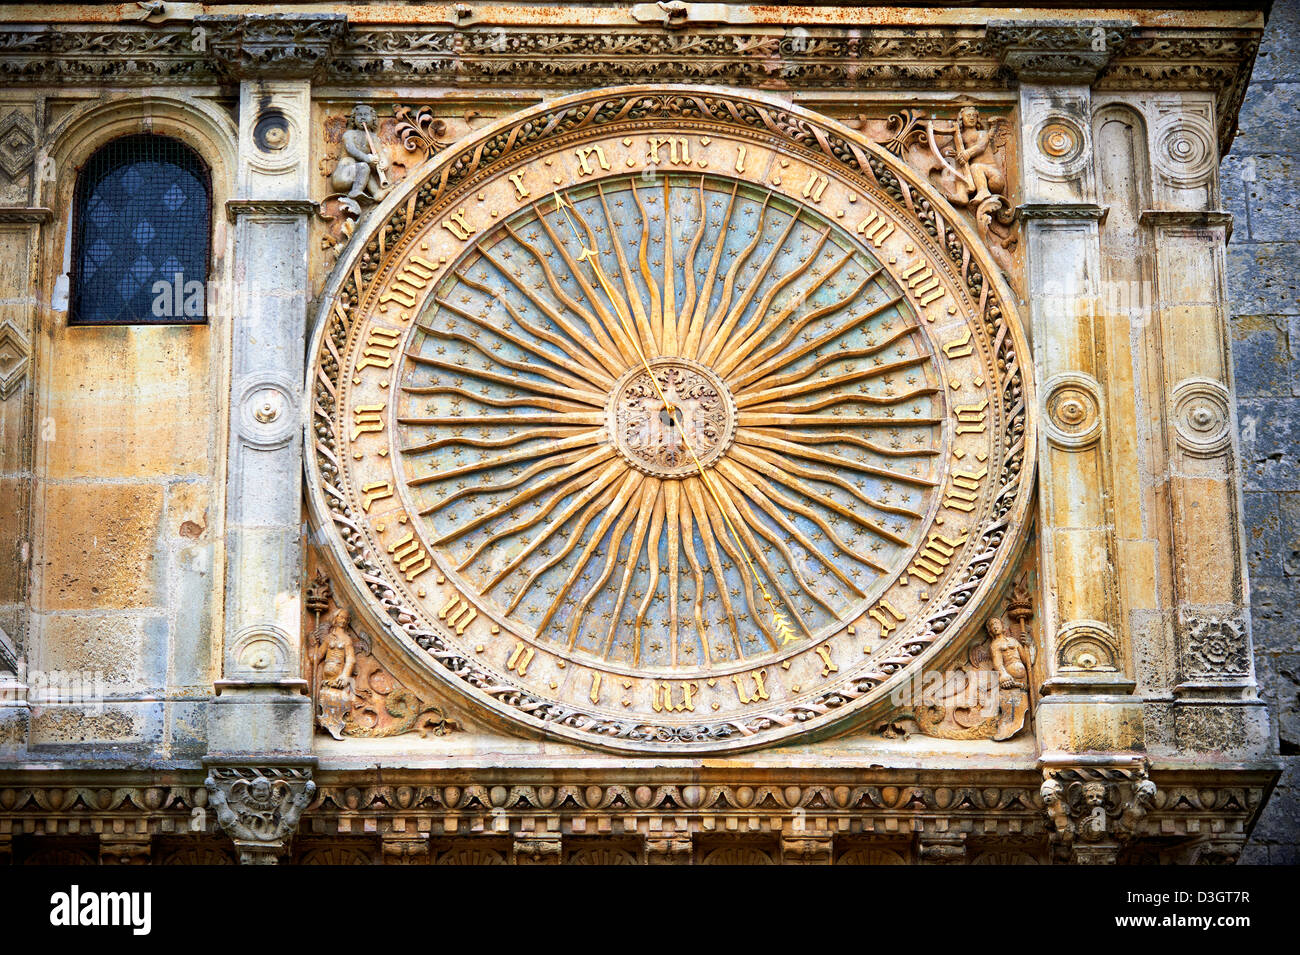 L'horloge astronomique (1528) de la cathédrale de Chartres, en France. Site du patrimoine mondial de l'UNESCO. Banque D'Images